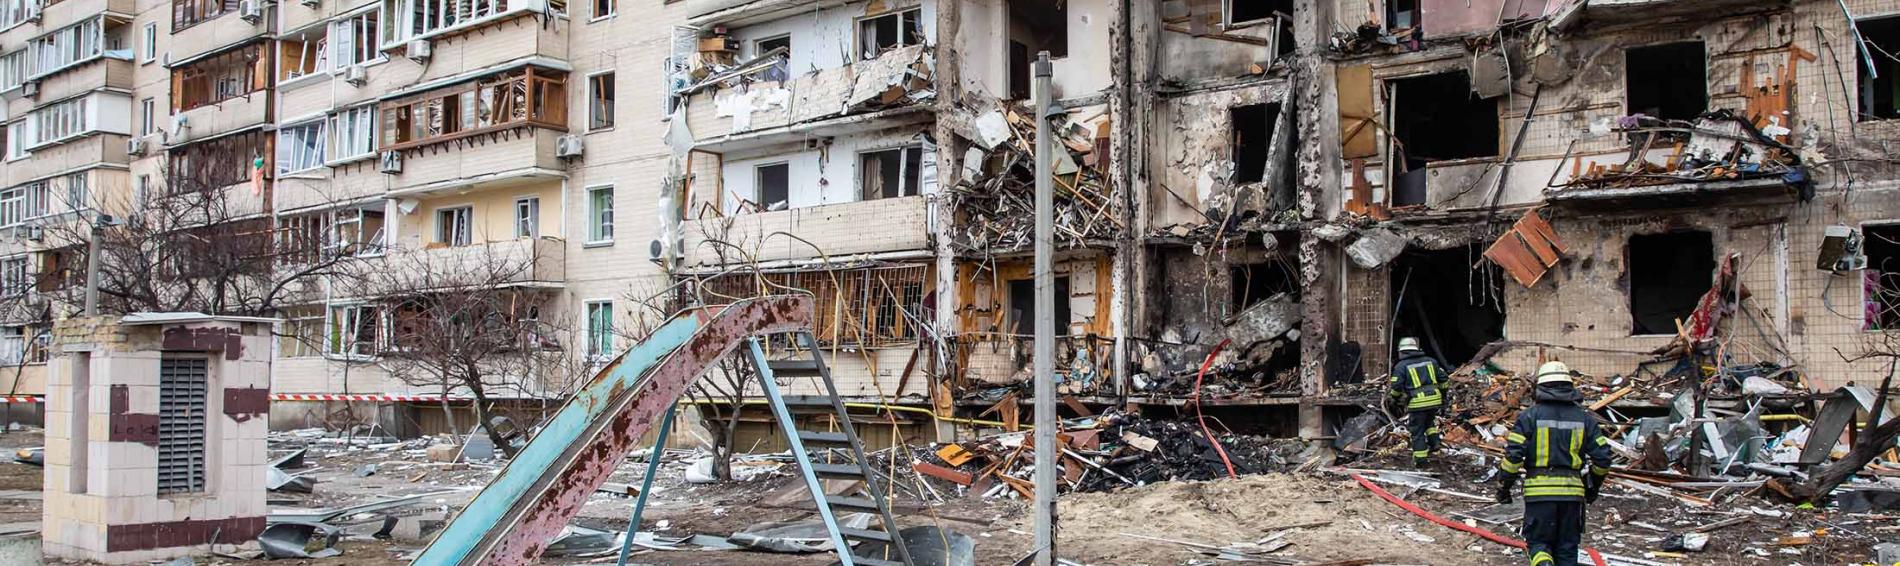 Ein durch Bombariderungen zerstörtes Haus in der Ukraine im Februar 2022. Foto: Shutterstock